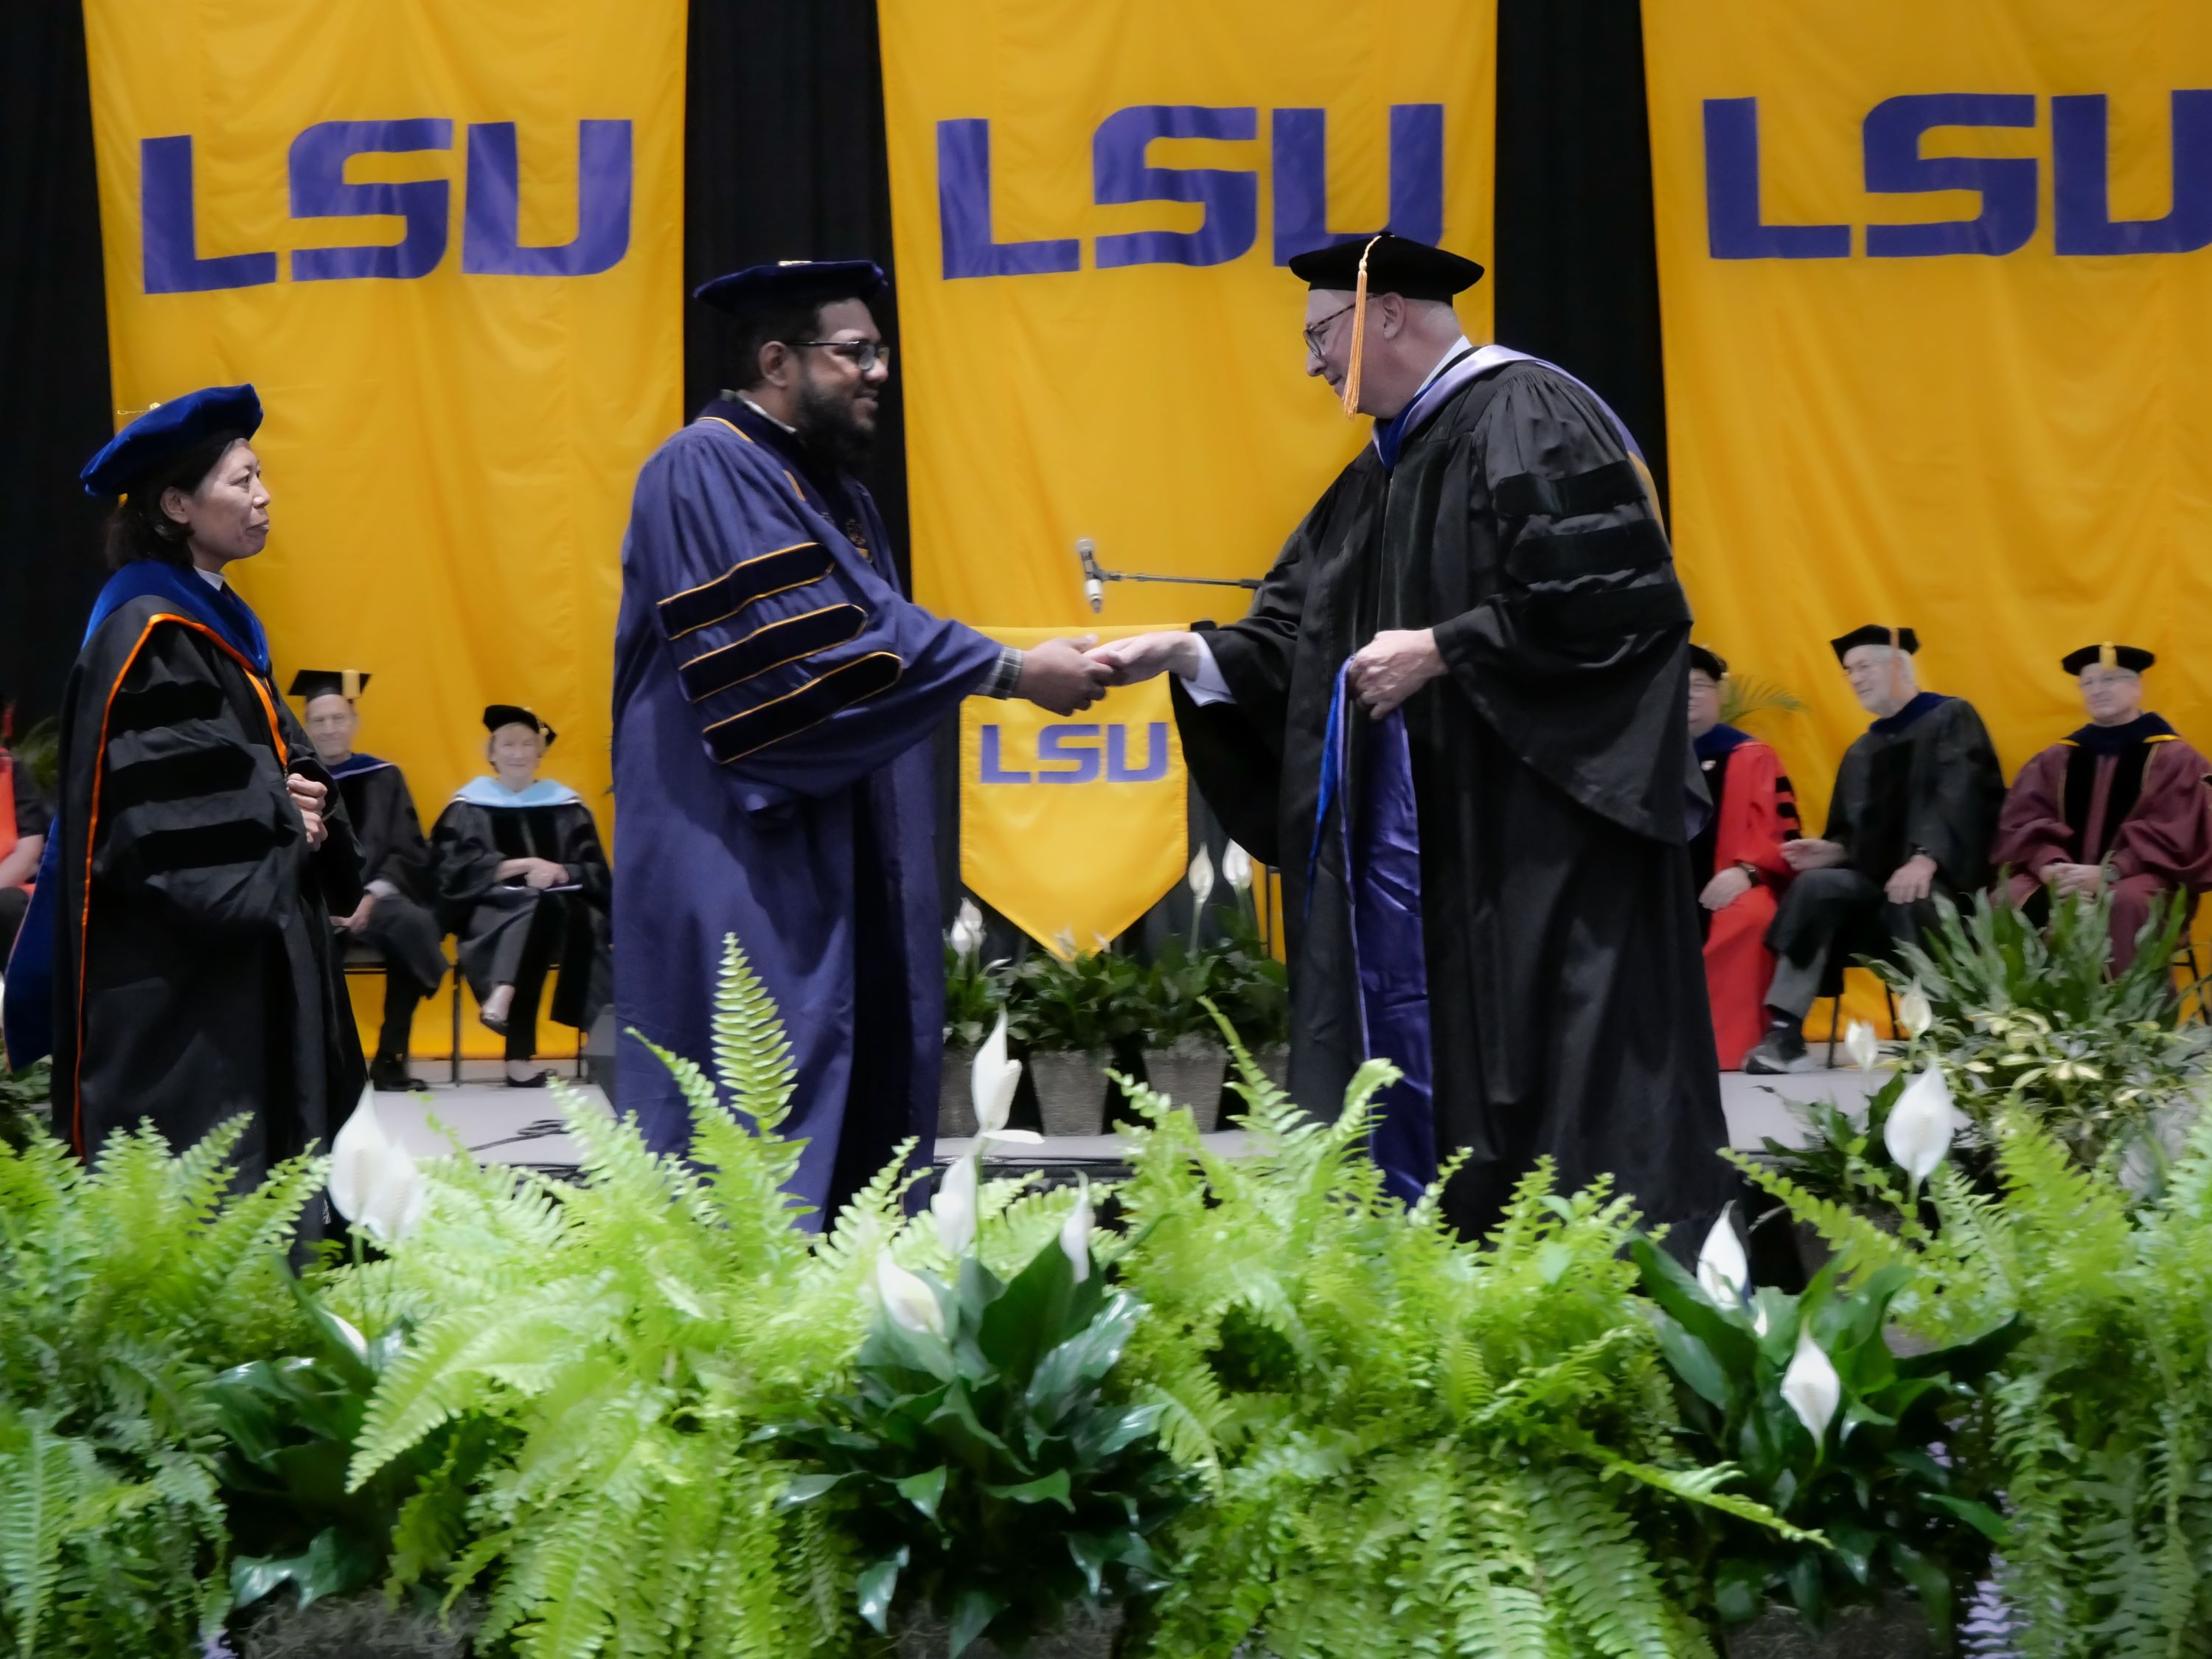 Graduate receives doctoral hood